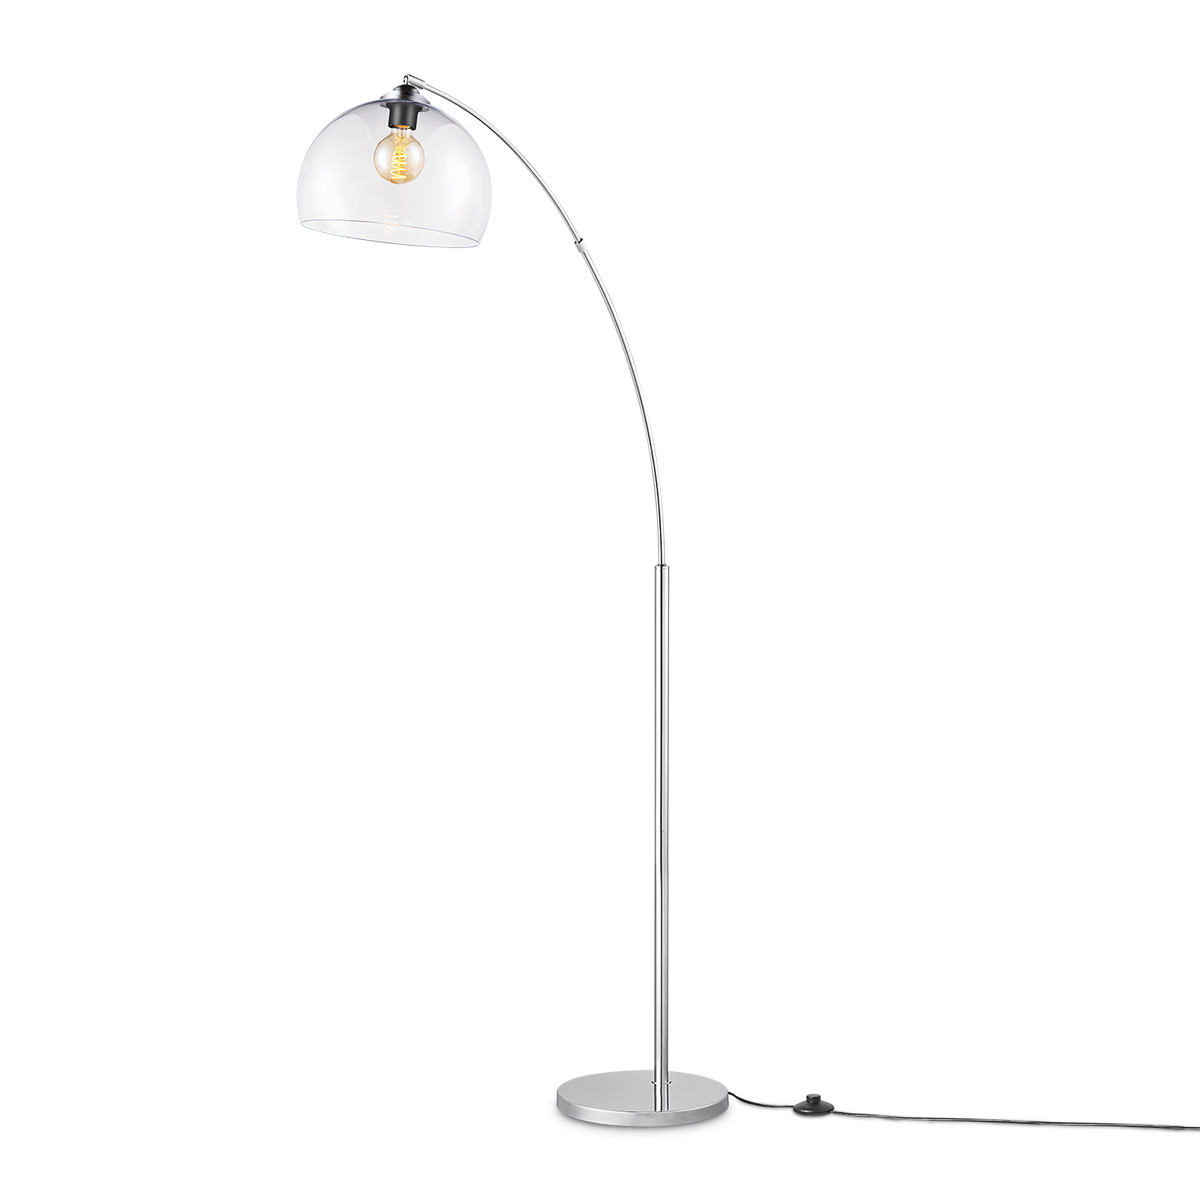 BoogVloerlamp Fisher 111.5/30/171cm, Wit, staande lamp met transparante lampenkap, geschikt voor E27 LED lichtbron, met voetschakelaar, geschikt voor woonkamer, slaapkamer en thuiskantoor